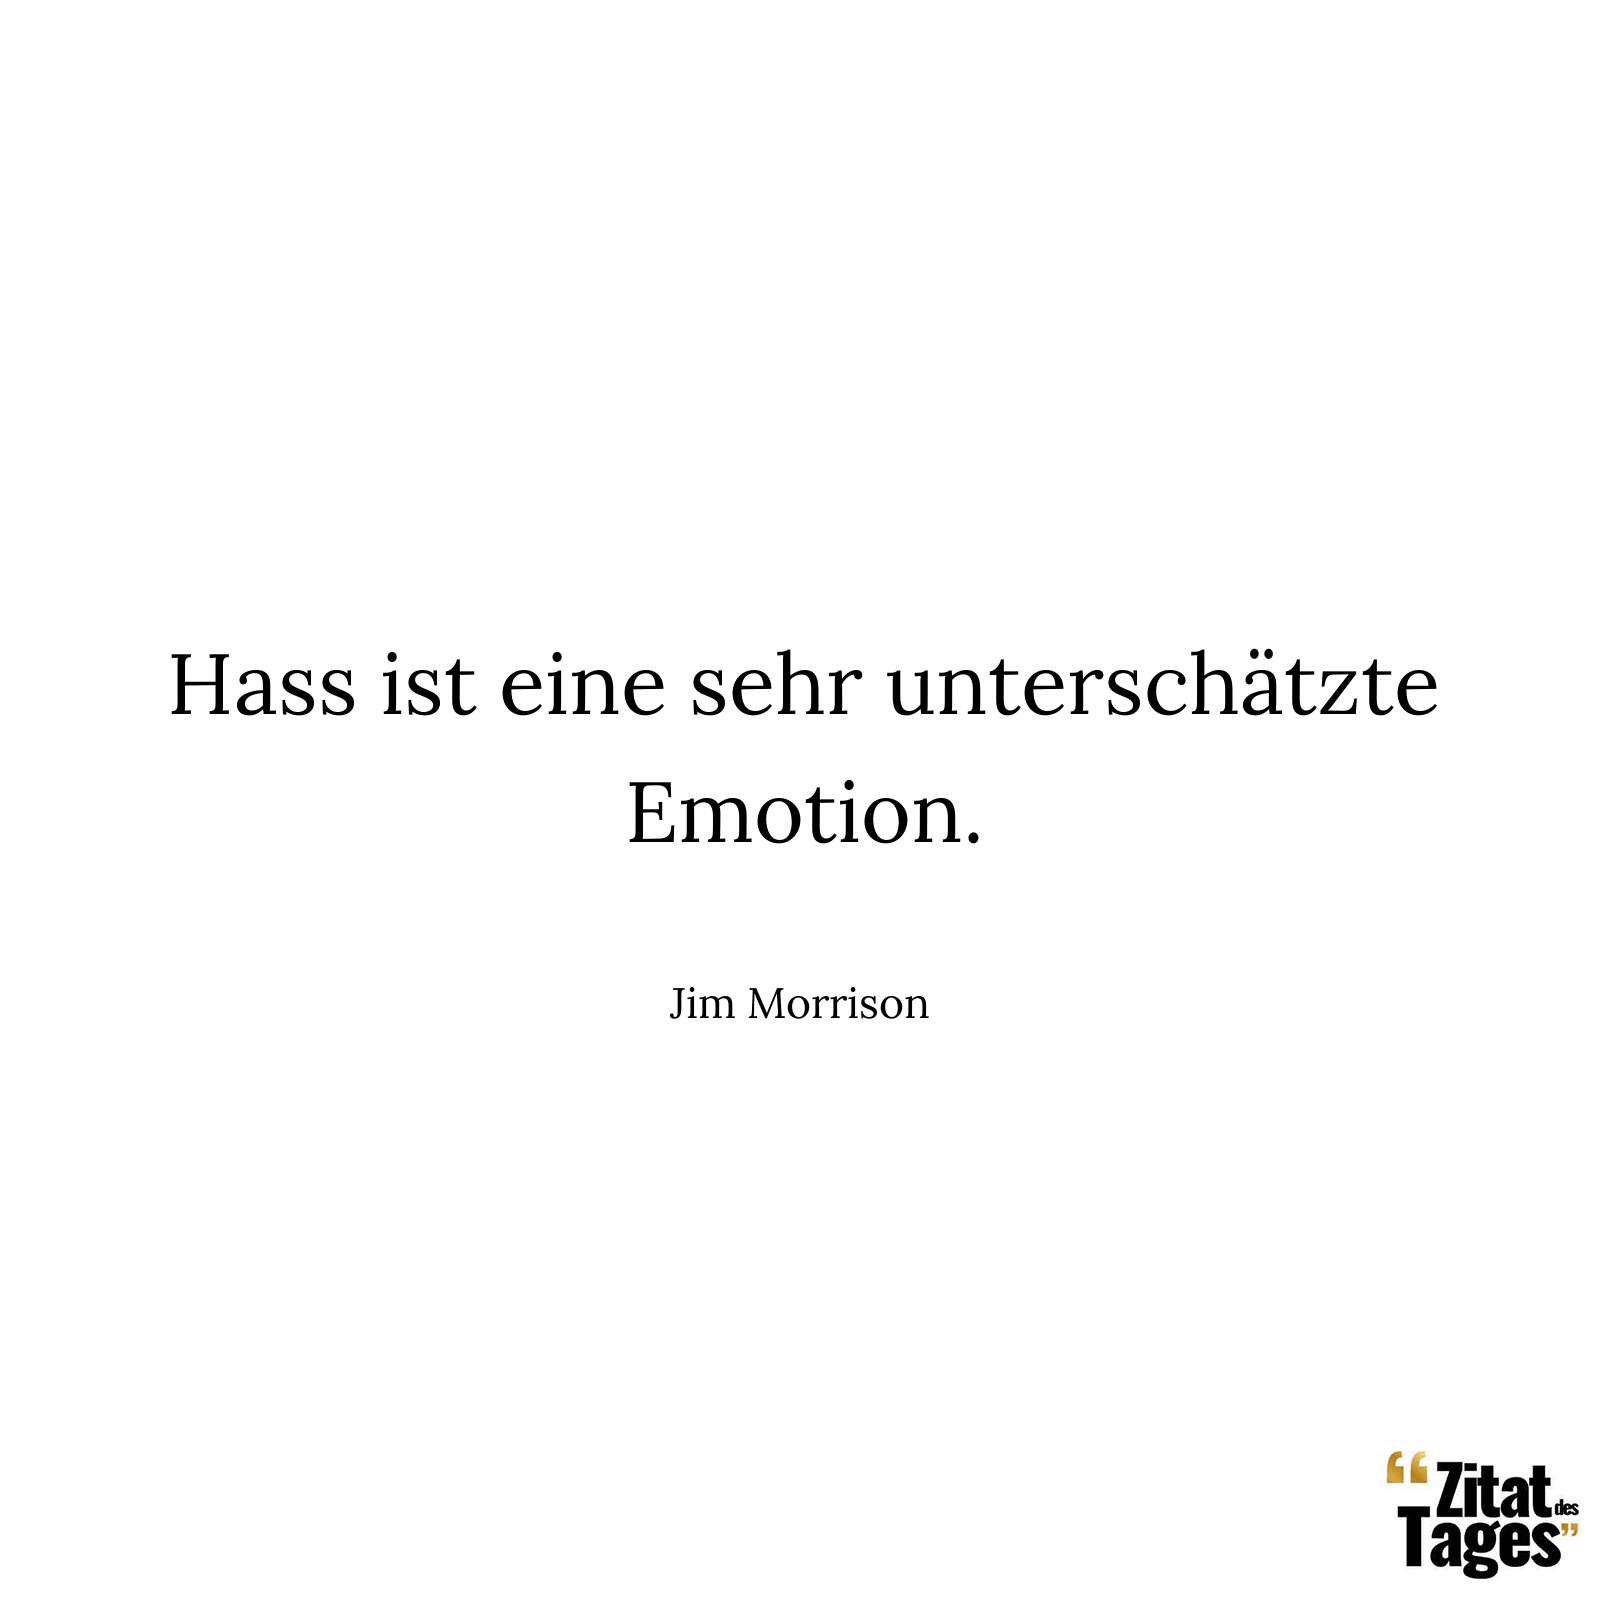 Hass ist eine sehr unterschätzte Emotion. - Jim Morrison